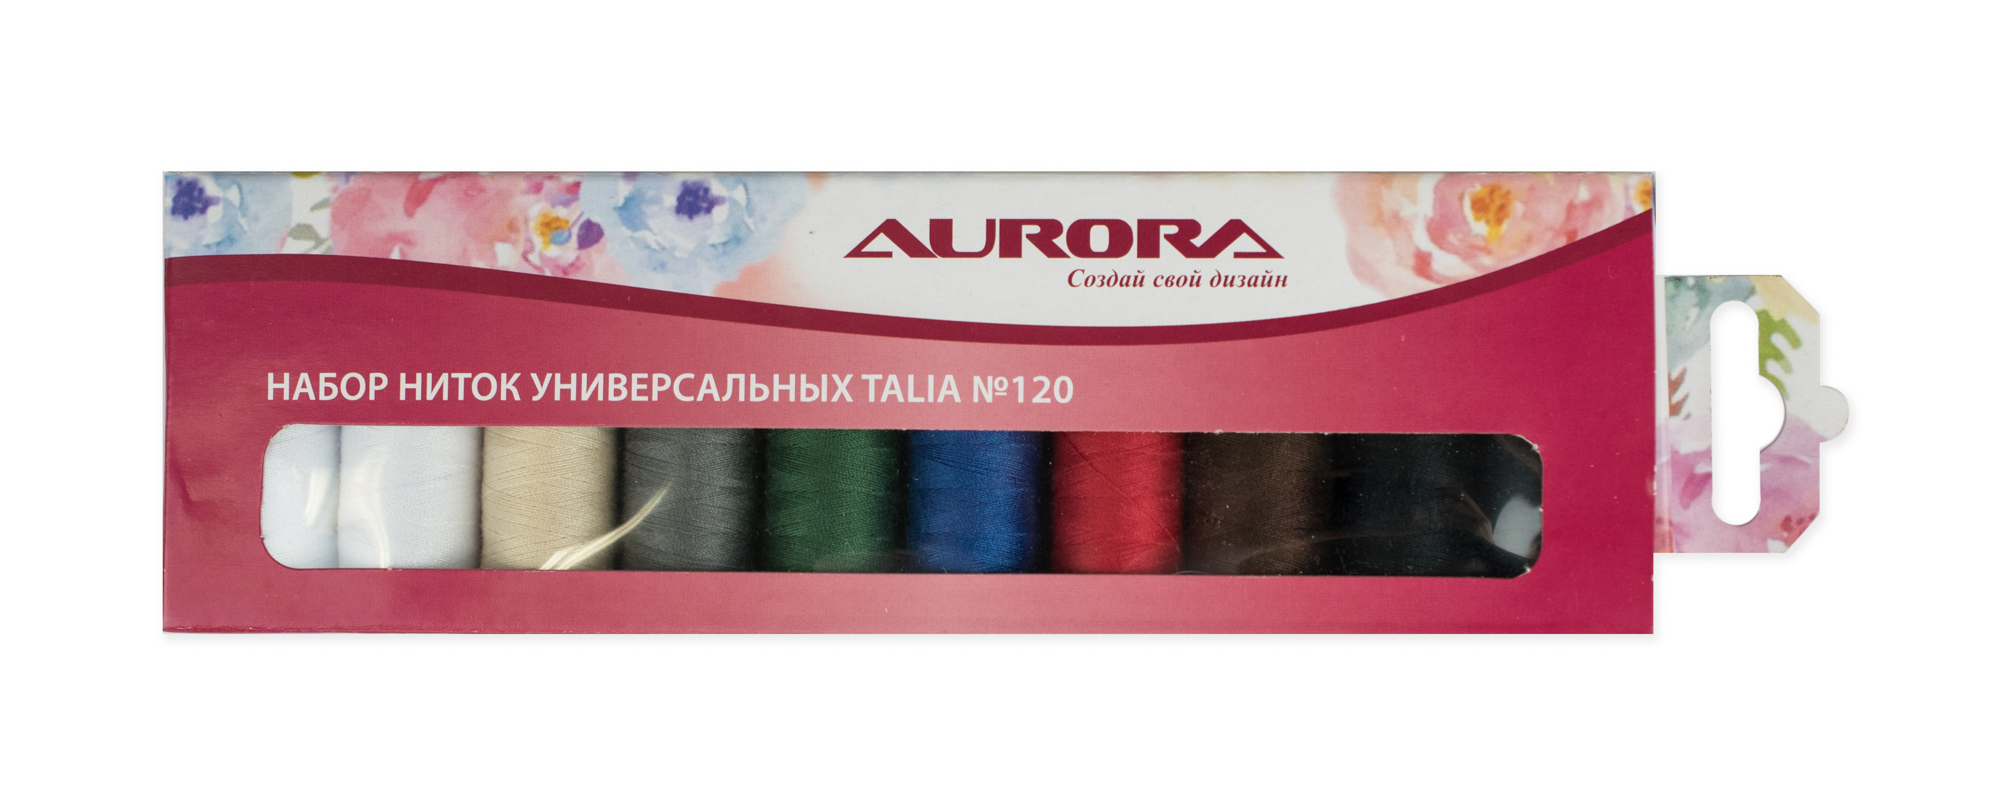 Набор ниток универсальных Talia №120 AU-1202 Aurora оптом